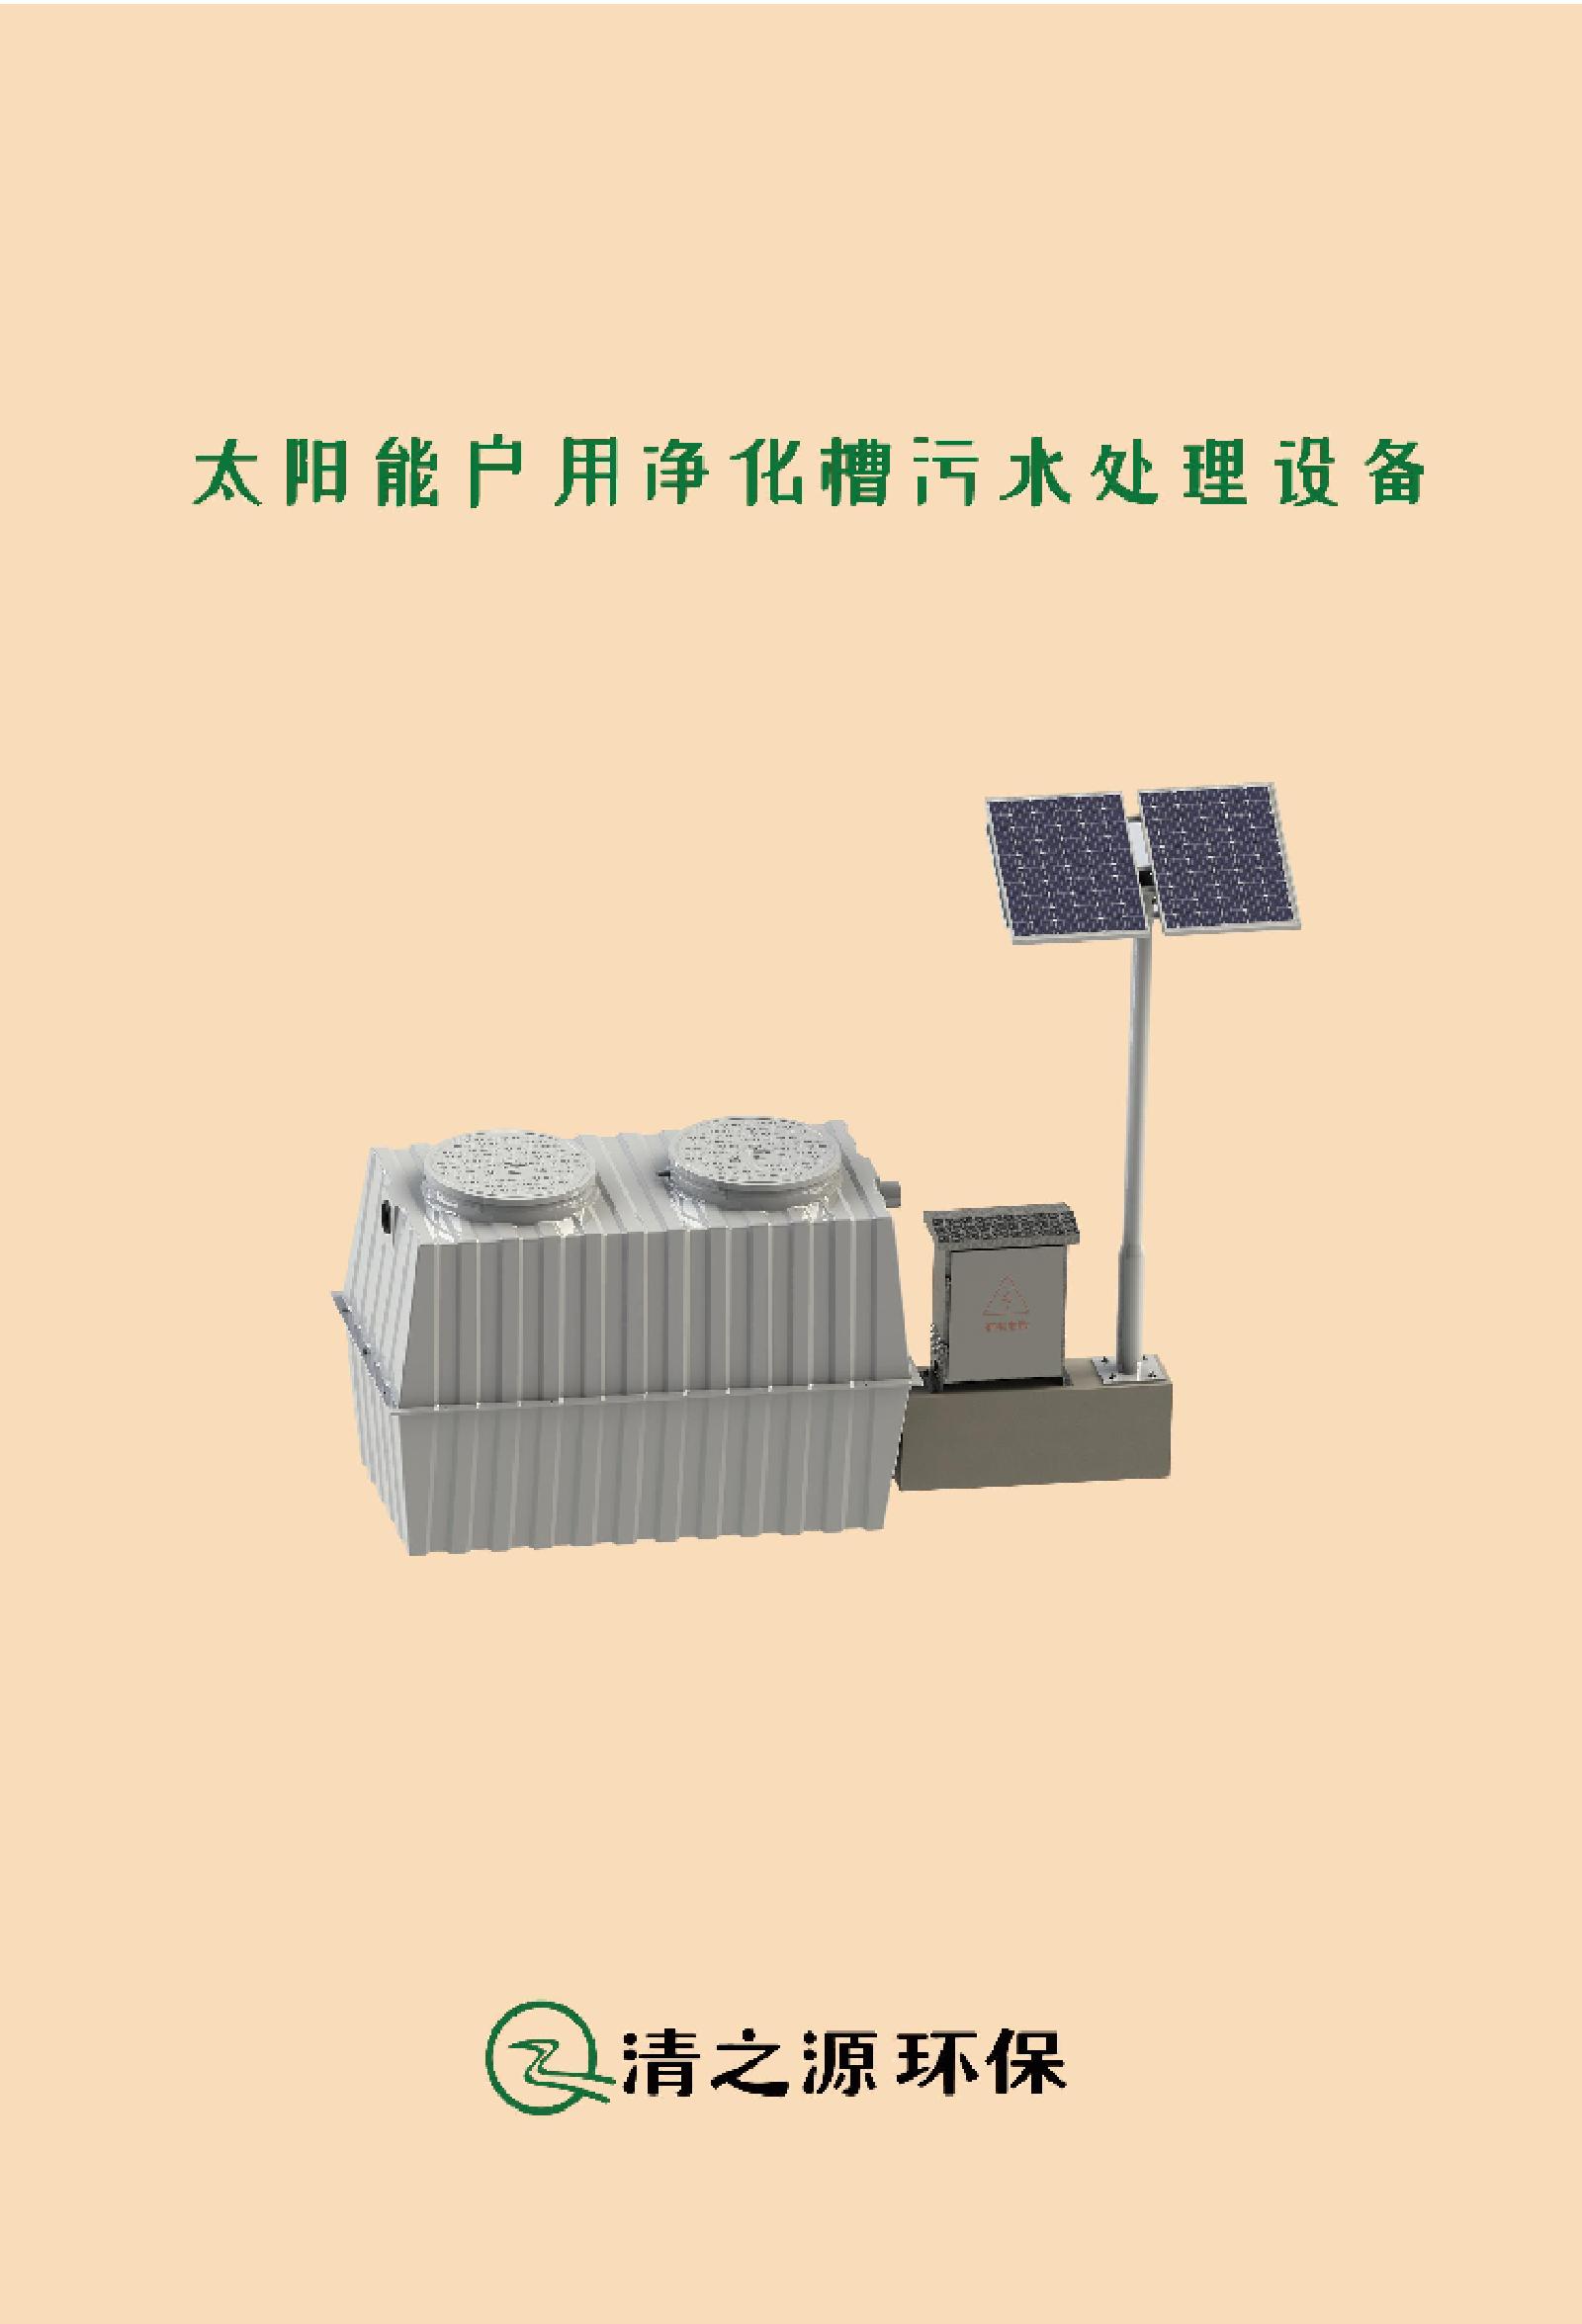 清之源太阳能户用净化槽污水处理设备